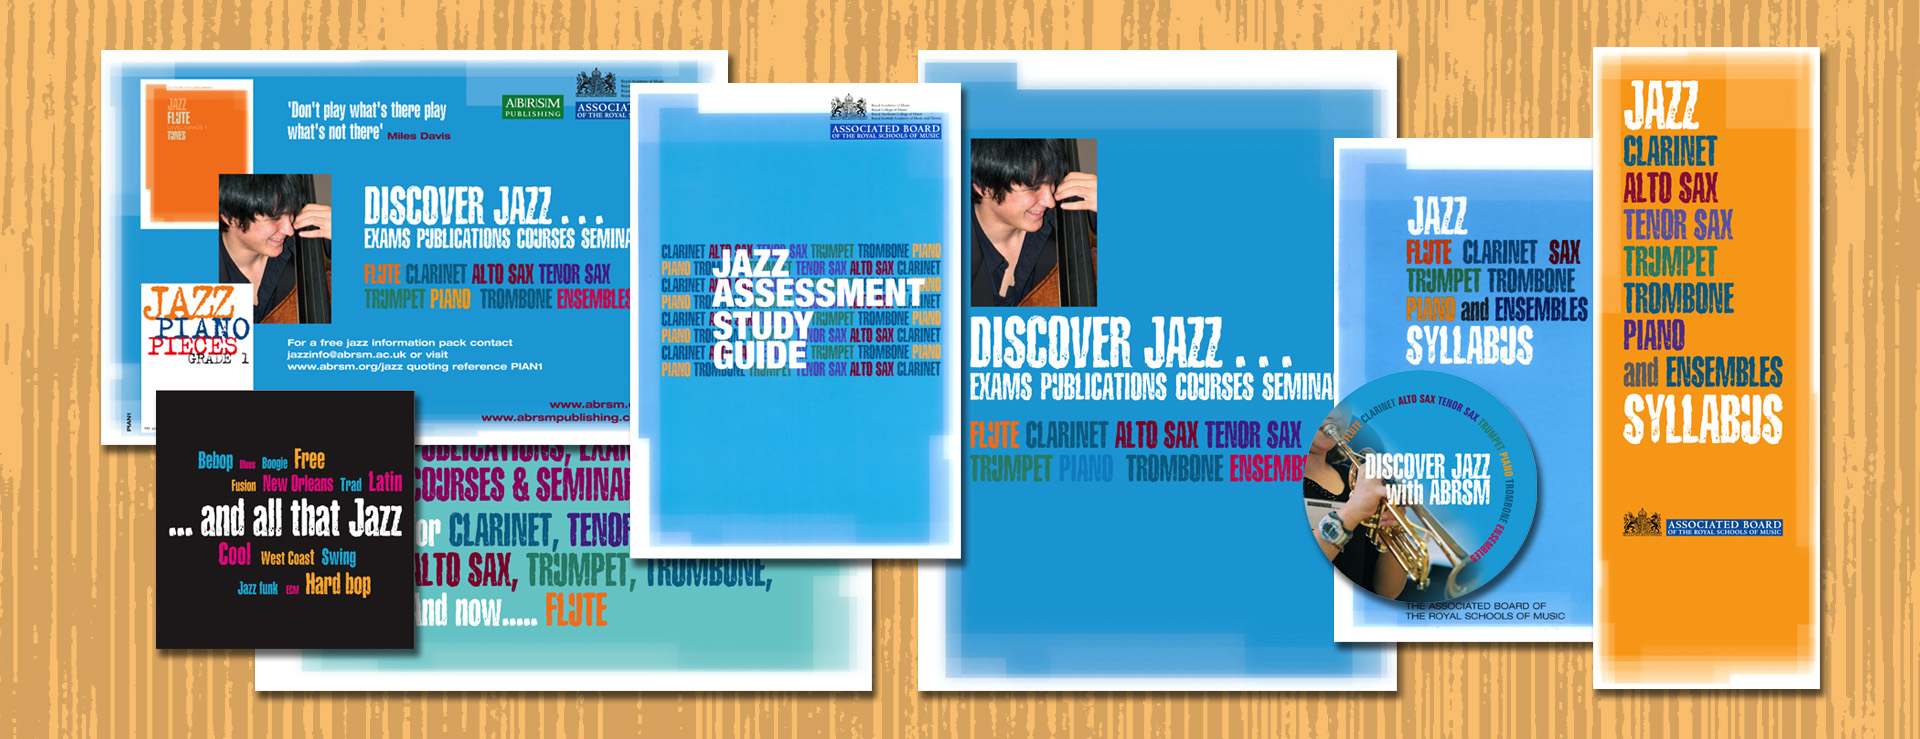 ABRSM Jazz syllabus